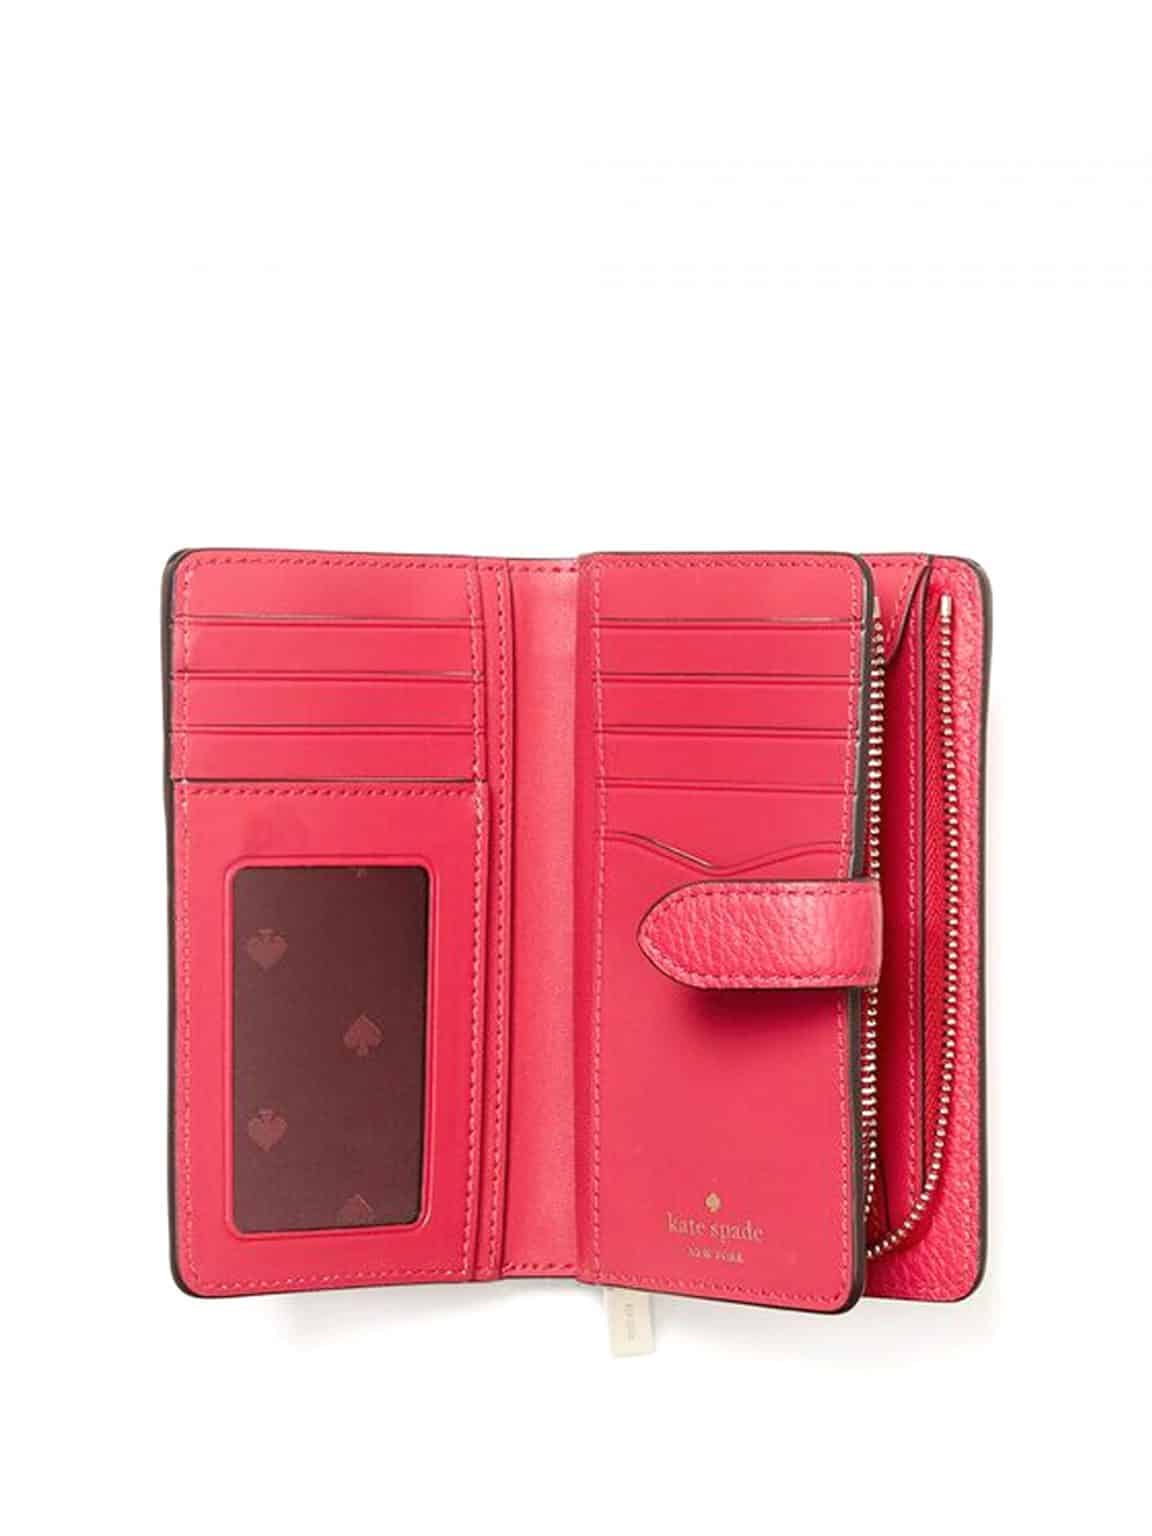 Kate Spade Leila Medium Compact Bifold Wallet Red Currant ETA 29th Mar ...